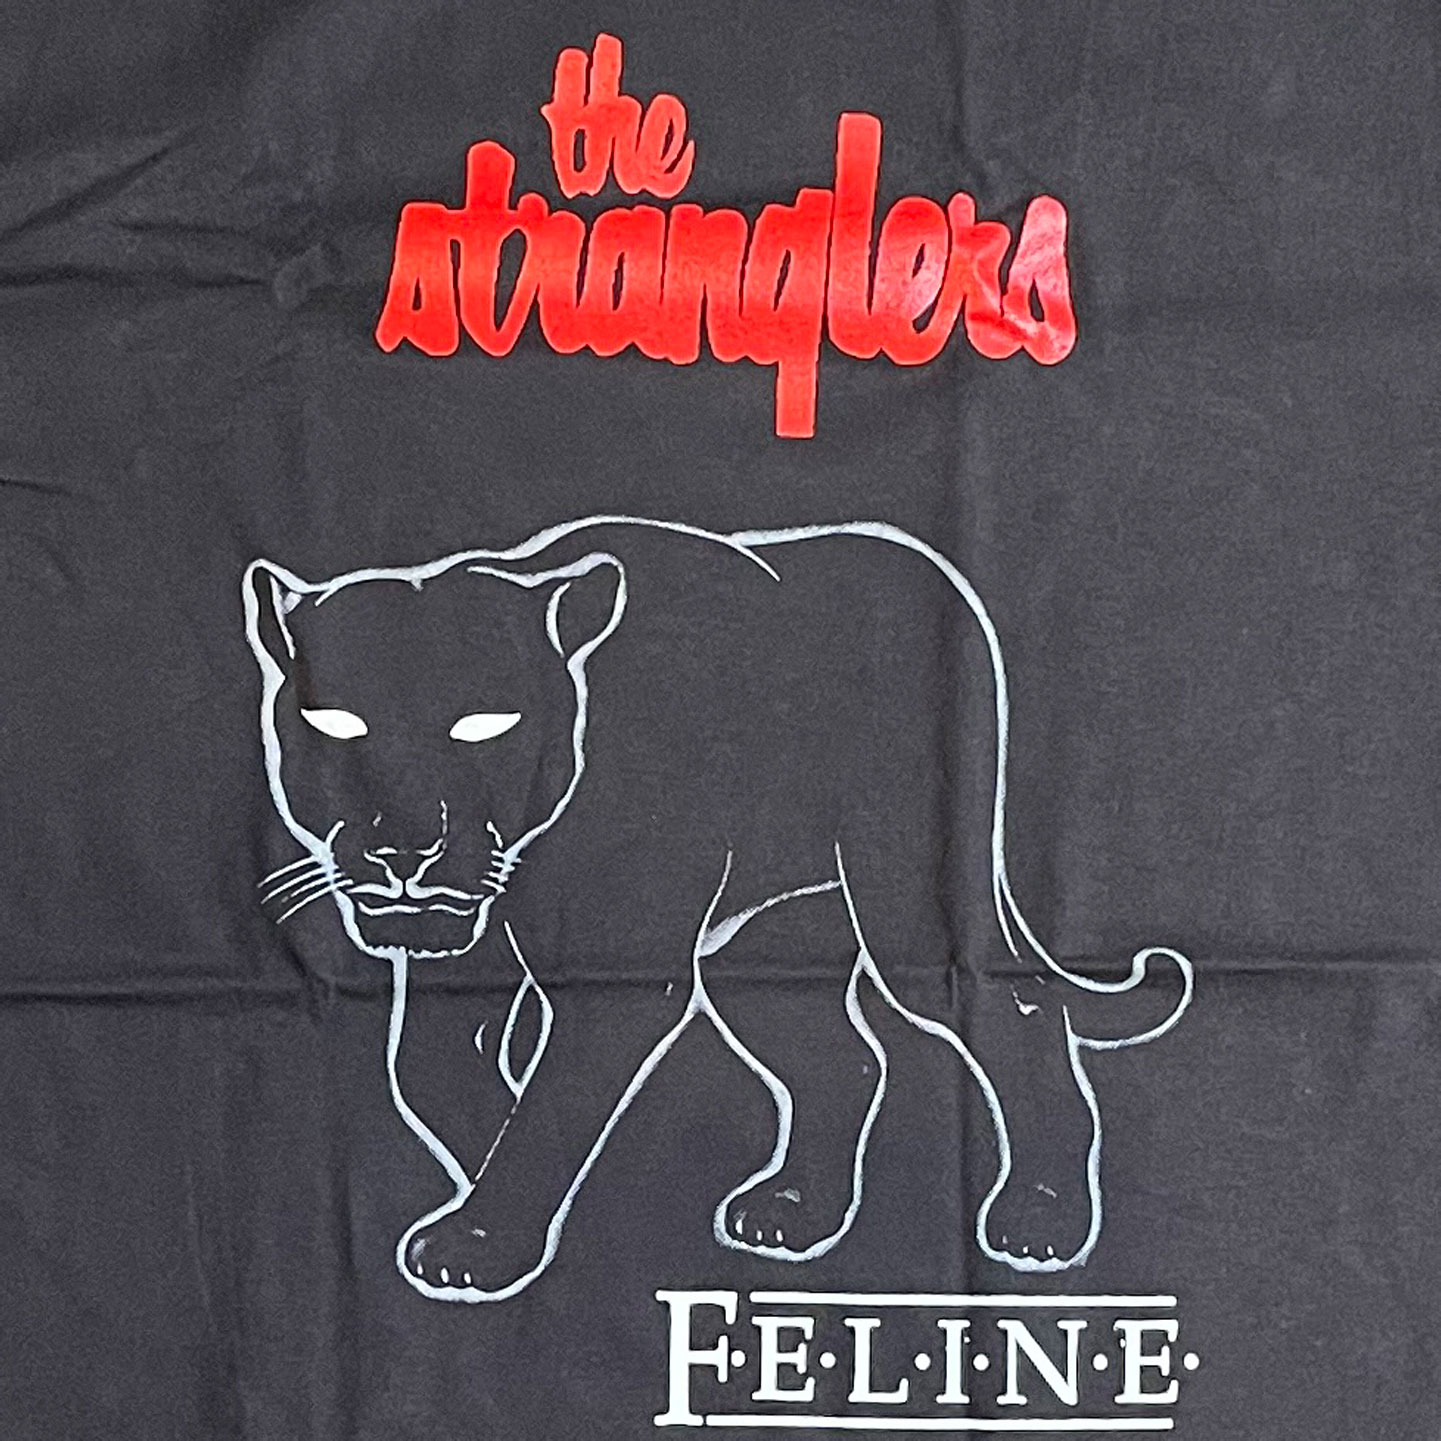 THE STRANGLERS Tシャツ Feline